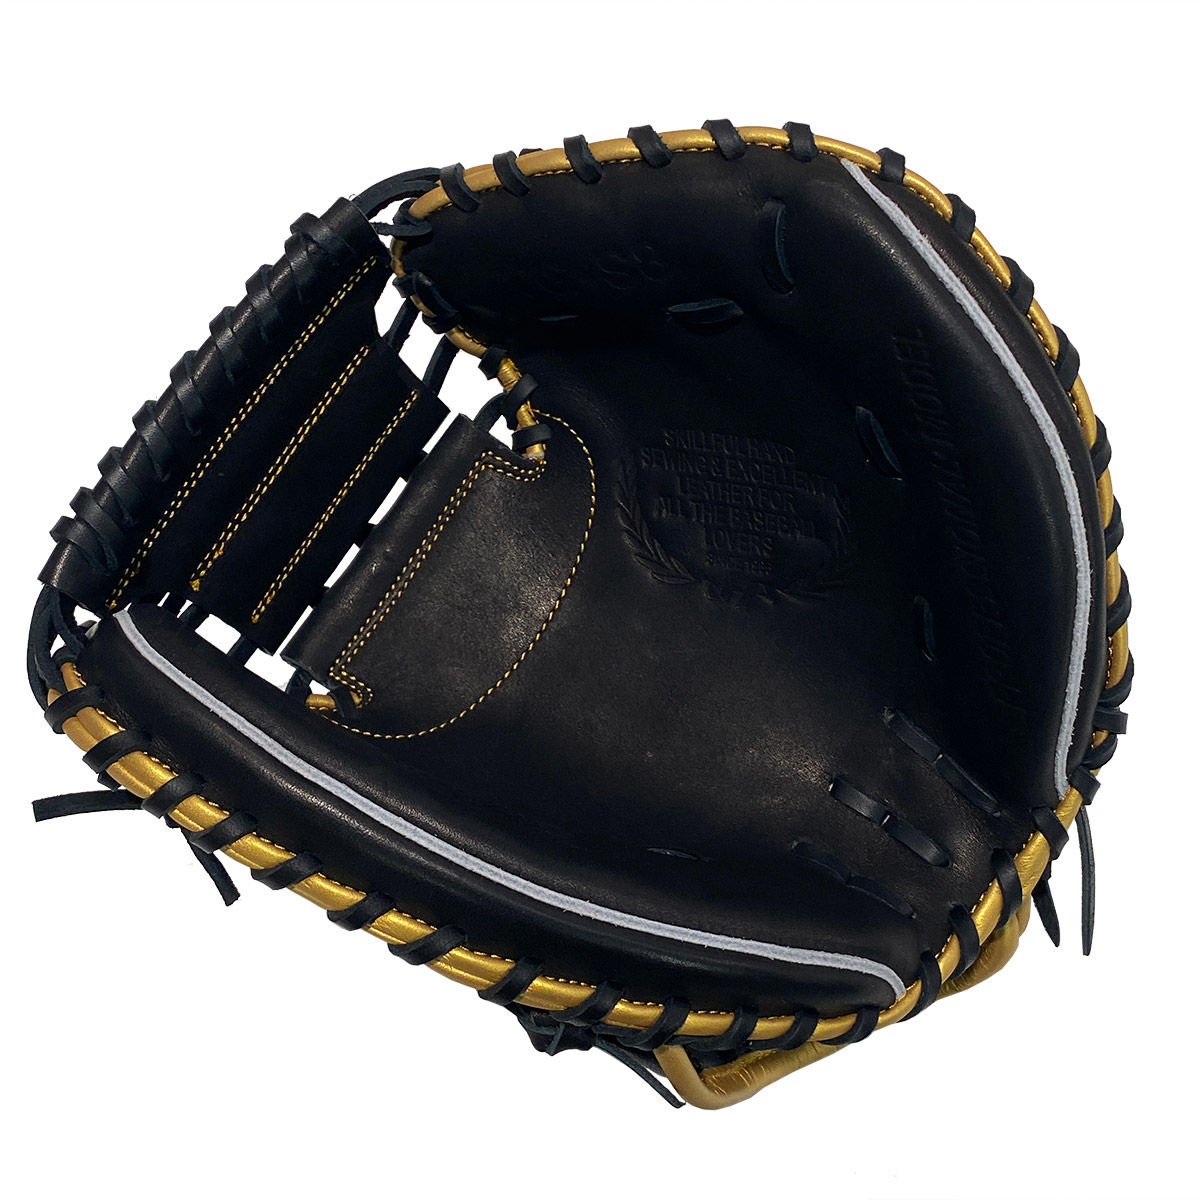  - takeyamaHATAKEYAMA Baseball бейсбол софтбол перчатка mito перчатка тренировка для софтбола ограничение тренировка mitoTG-S8 24SP весна лето 